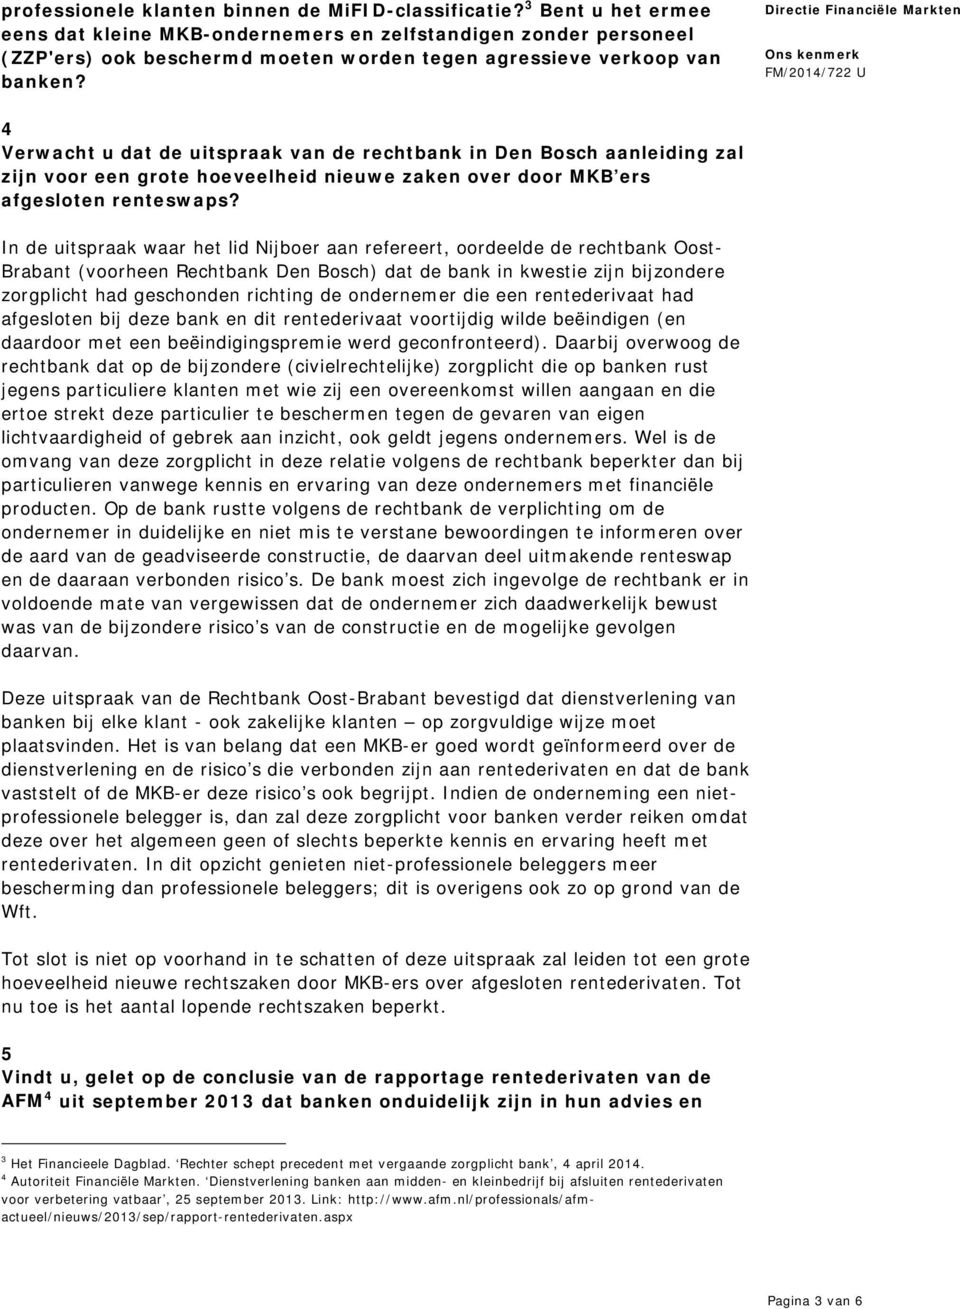 4 Verwacht u dat de uitspraak van de rechtbank in Den Bosch aanleiding zal zijn voor een grote hoeveelheid nieuwe zaken over door MKB ers afgesloten renteswaps?